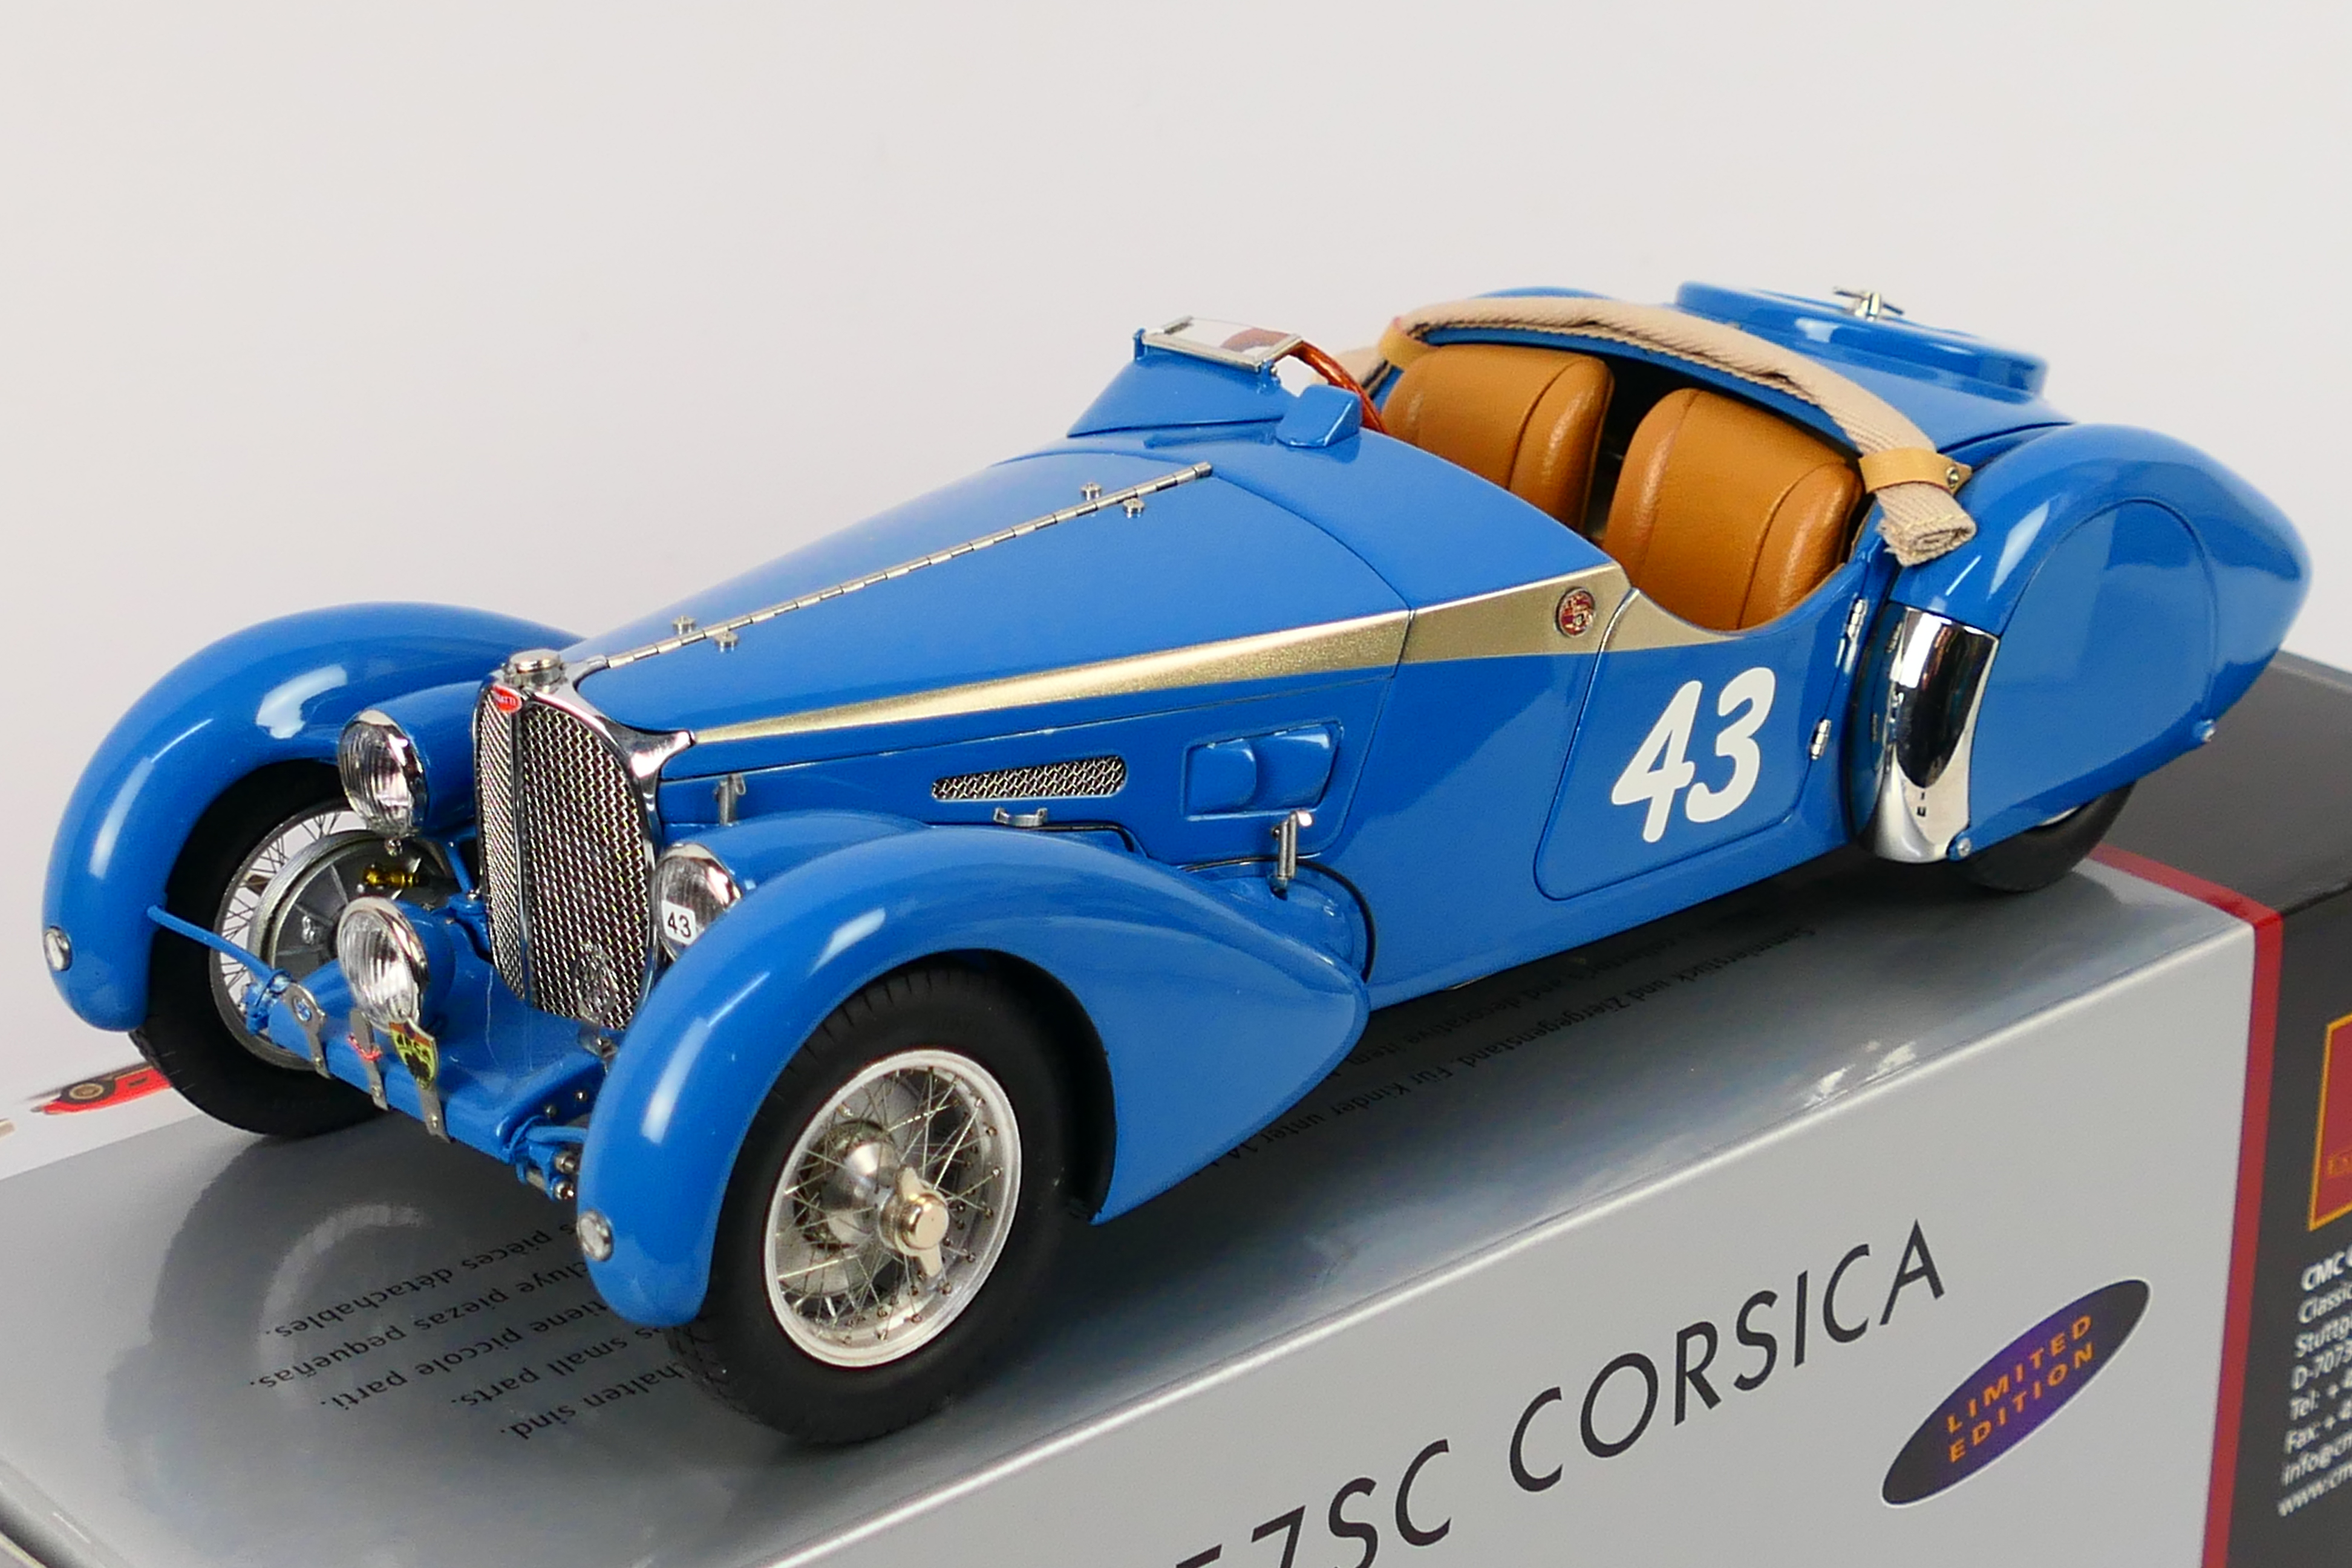 CMC - A limited edition 1938 Bugatti 57 SC Corsica in the rare Roadster Sport finish in 1:18 scale - Image 2 of 9